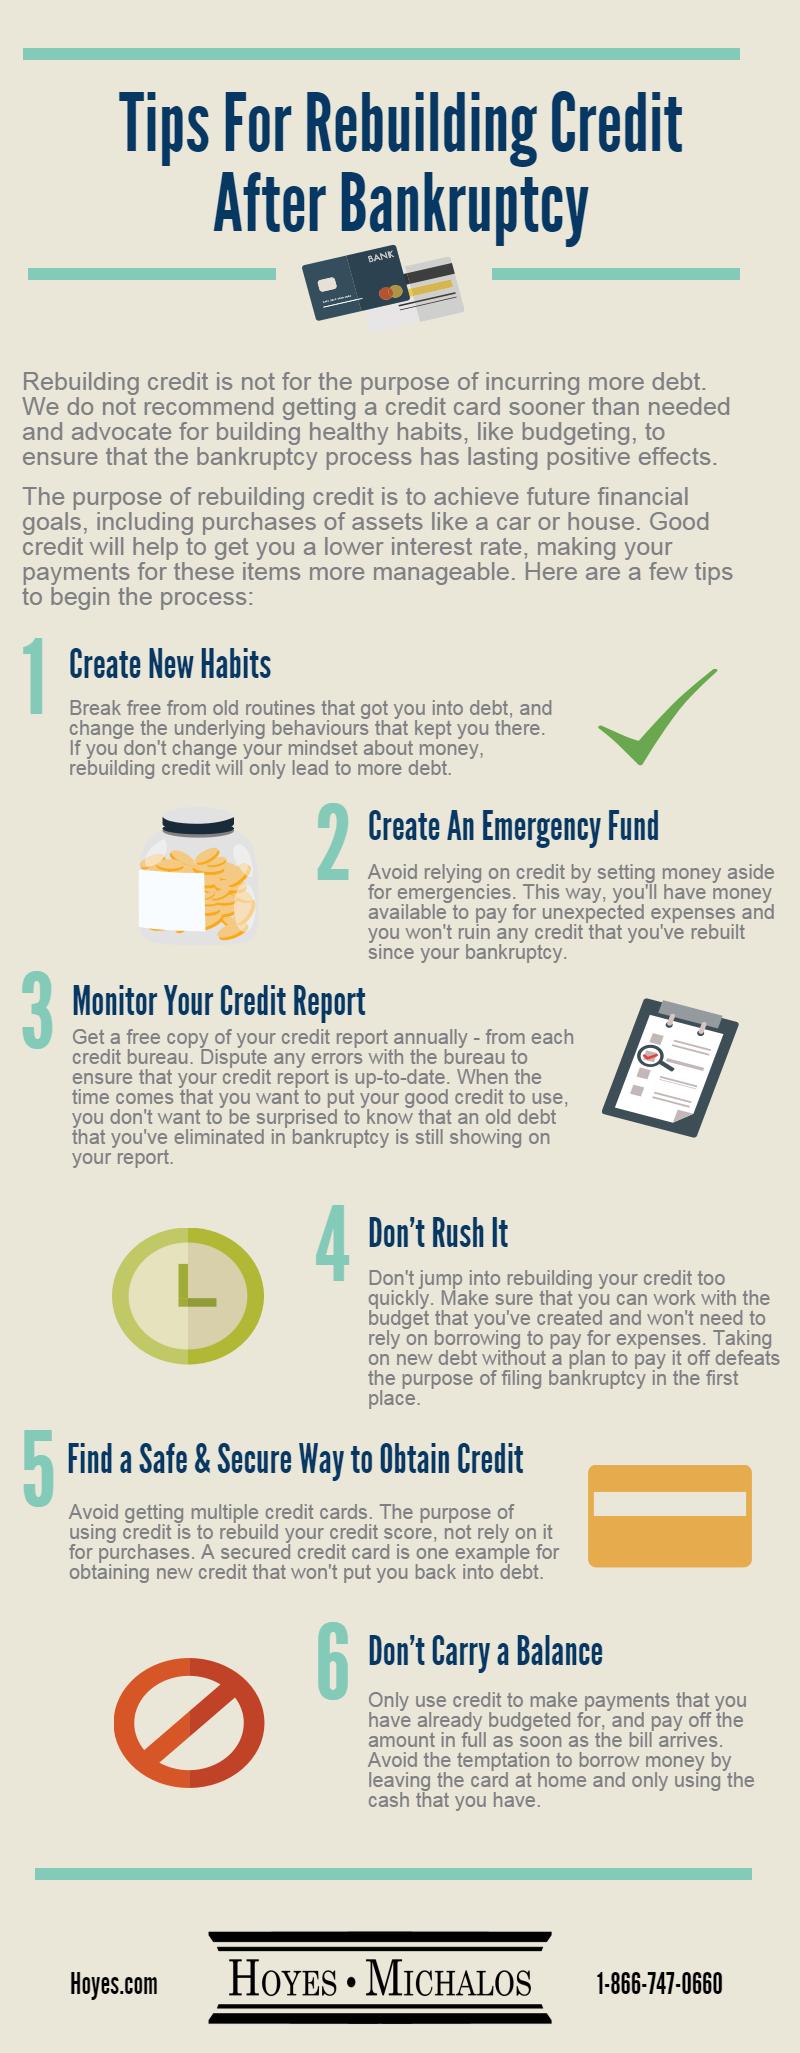 Tips For Rebuilding Credit After Bankruptcy